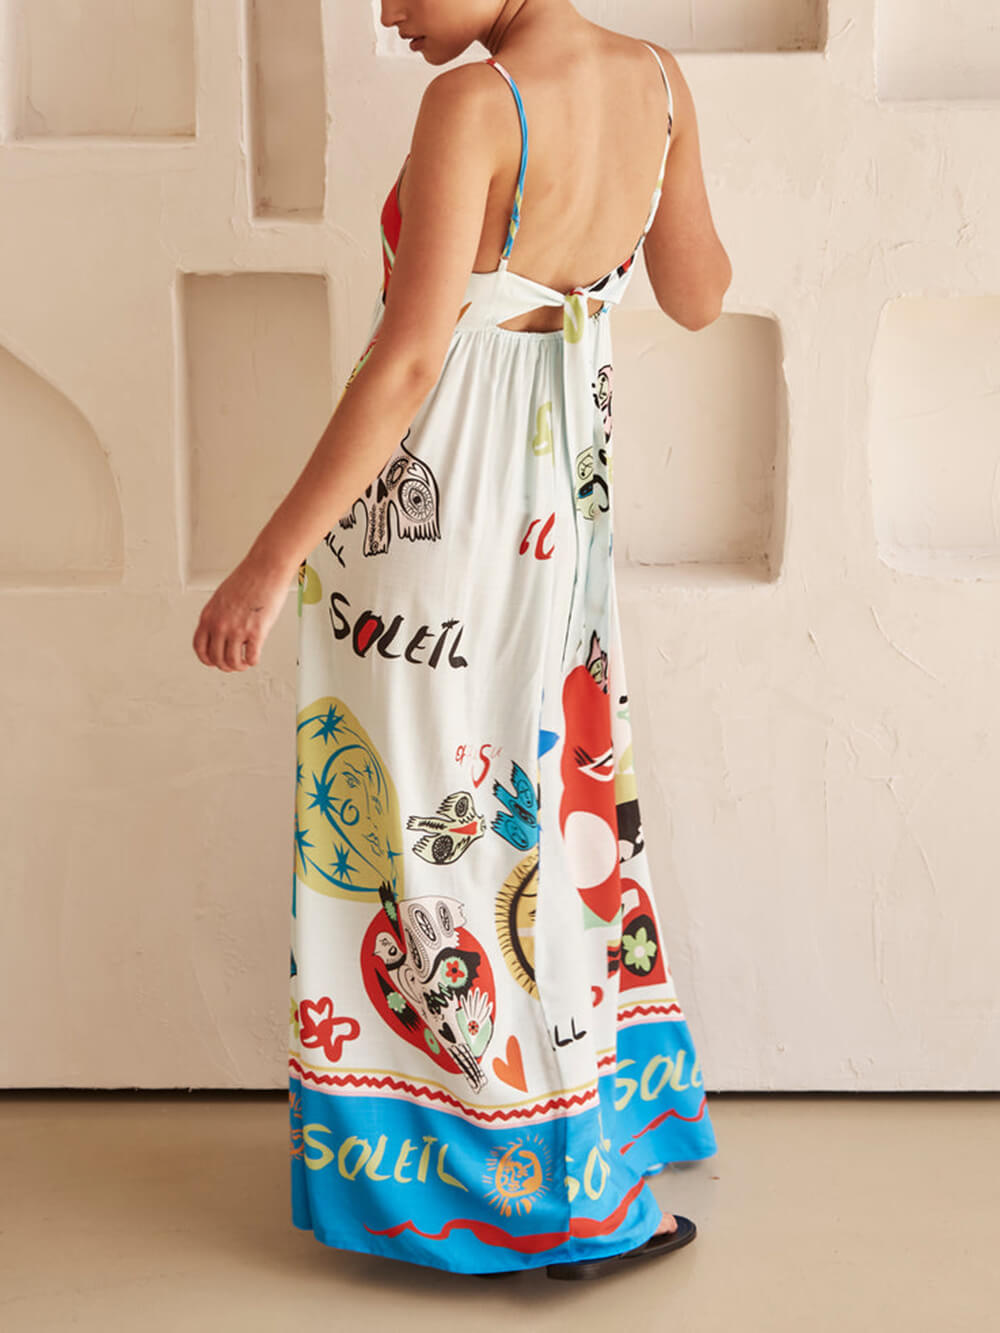 परिष्कृत सनसनी साटन अद्वितीय प्रिंट मैक्सी ड्रेस